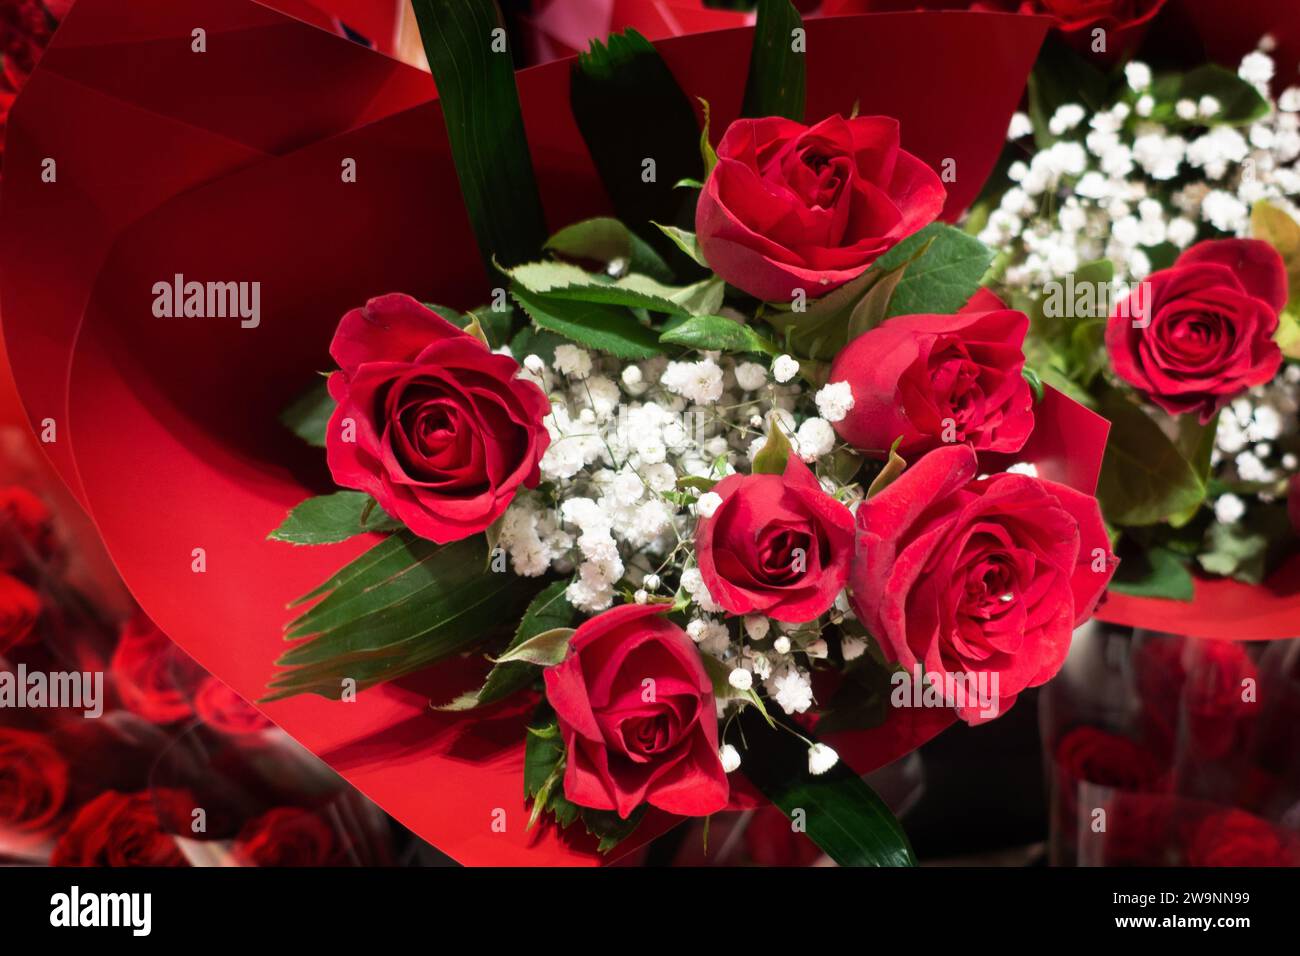 Une demi-douzaine de roses rouges enveloppées bouquet avec des fleurs blanches, pour la Saint-Valentin, la fête des mères, comme cadeau d'anniversaire ou un article surprise datant. Banque D'Images